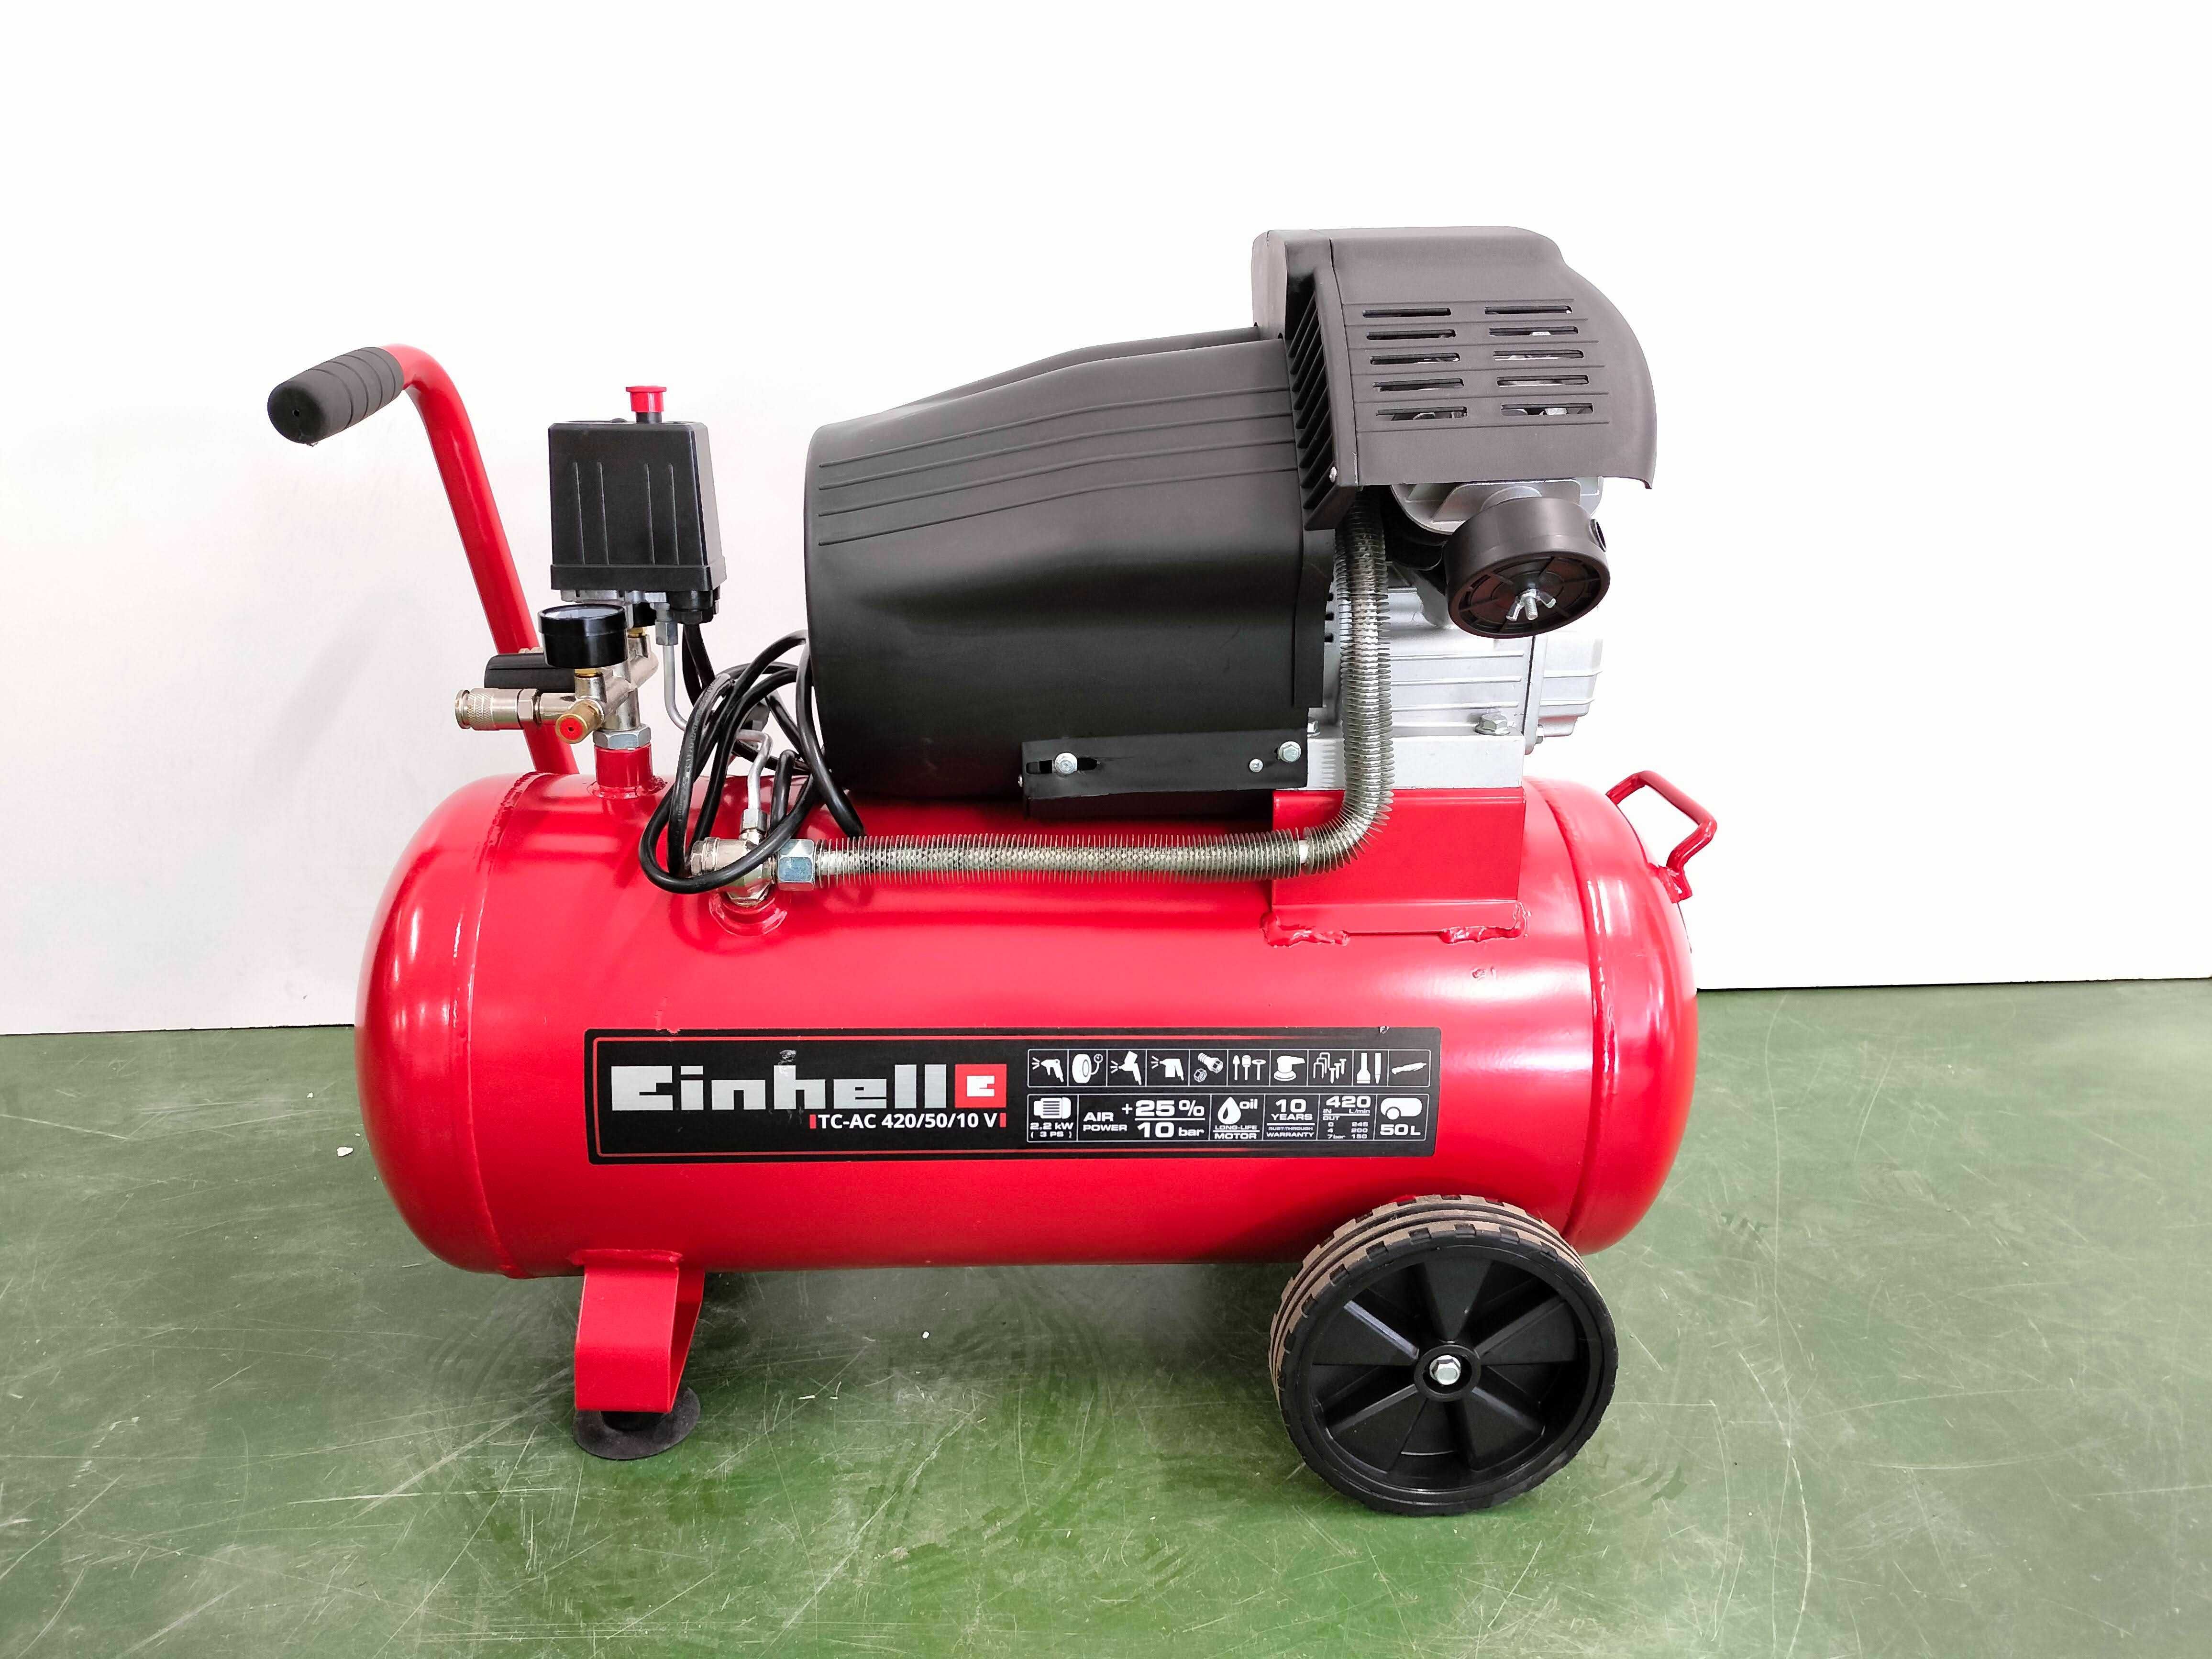 Kompresor olejowy Einhell TC-AC 420/50/10 V